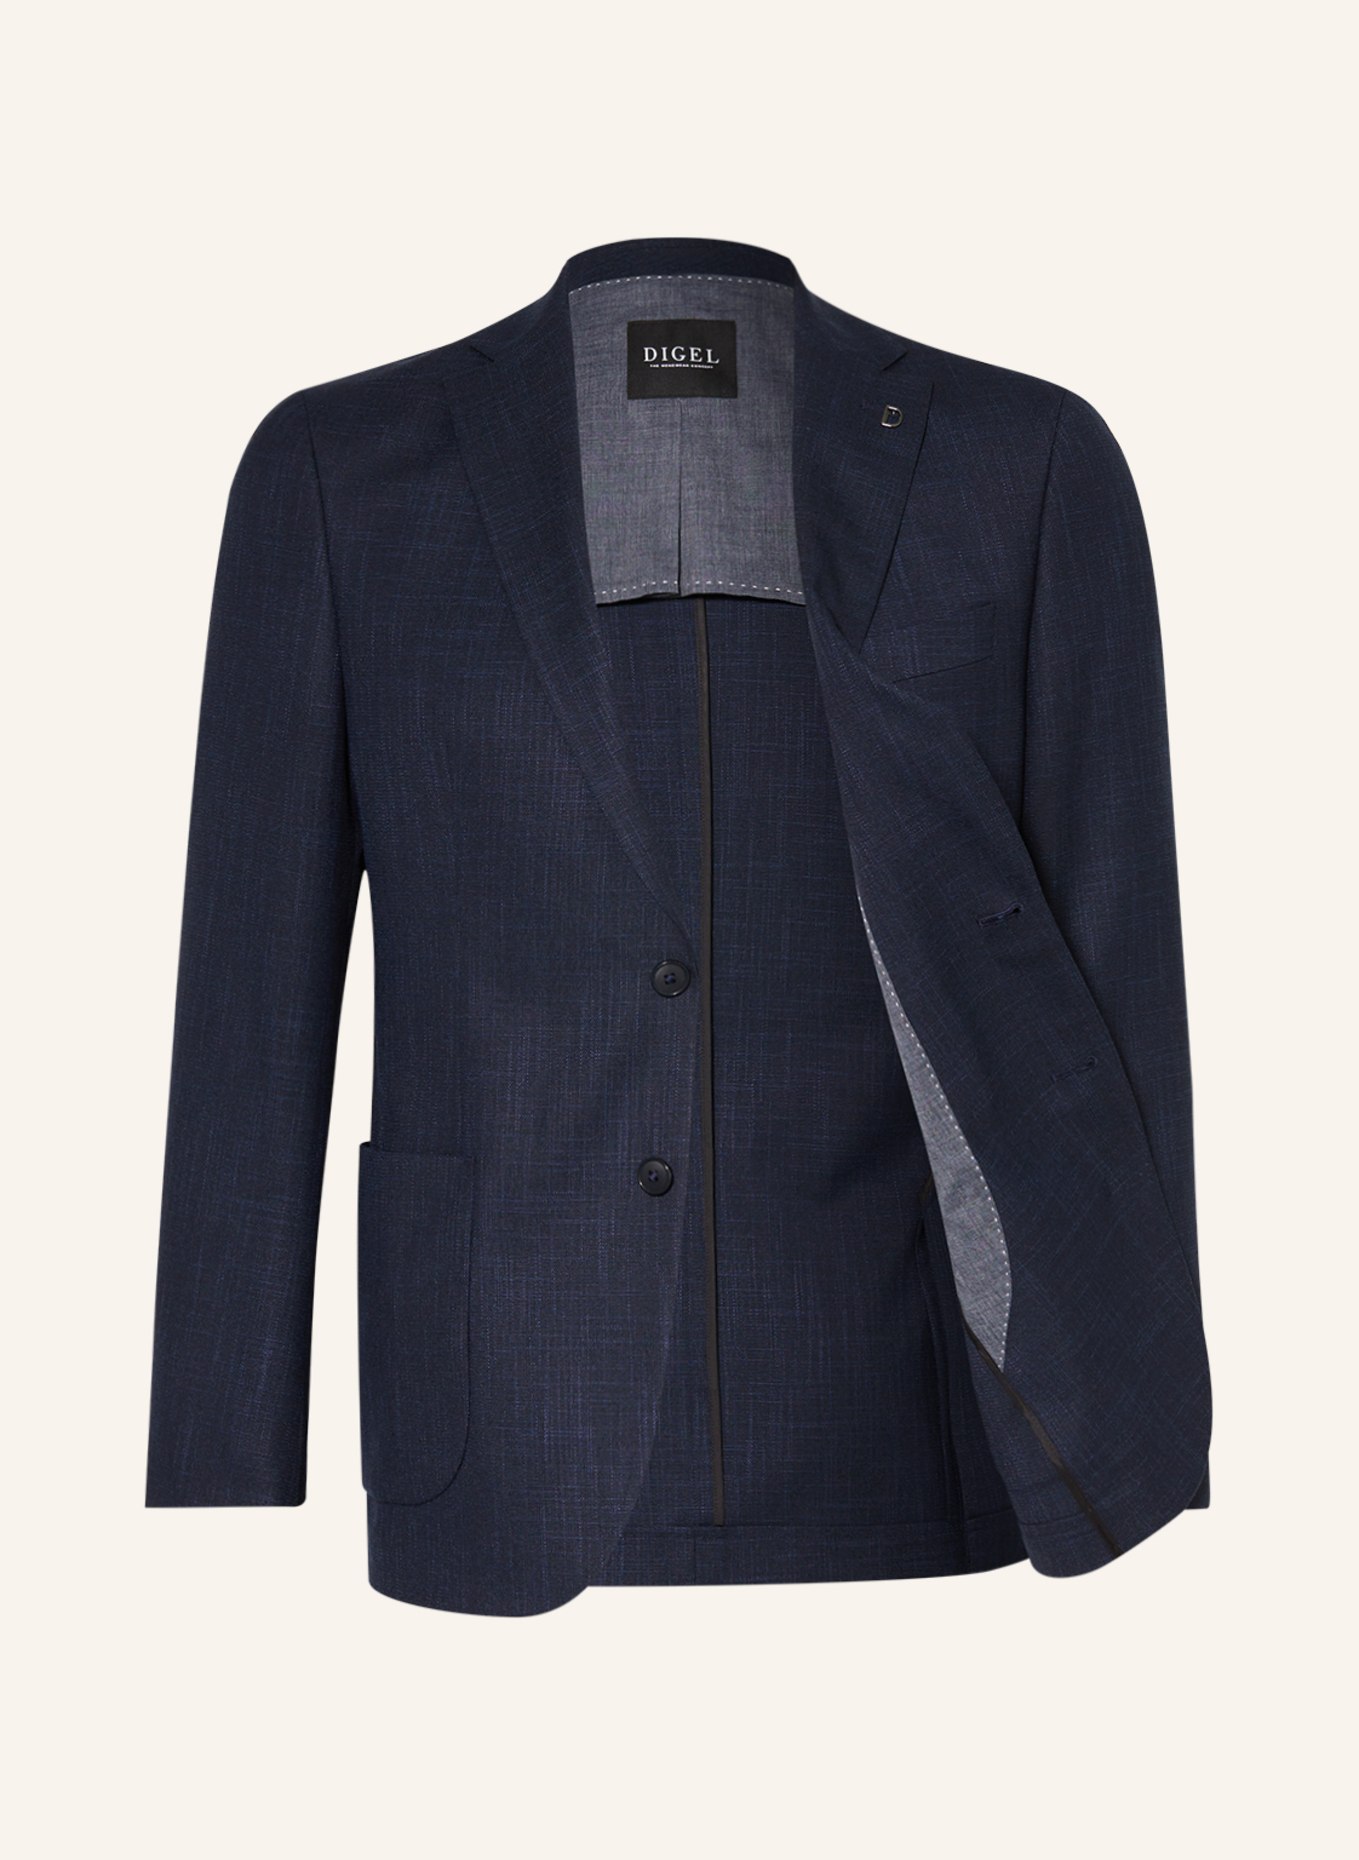 DIGEL Suit jacket EDWARD modern fit, Color: 22 BLAU (Image 4)